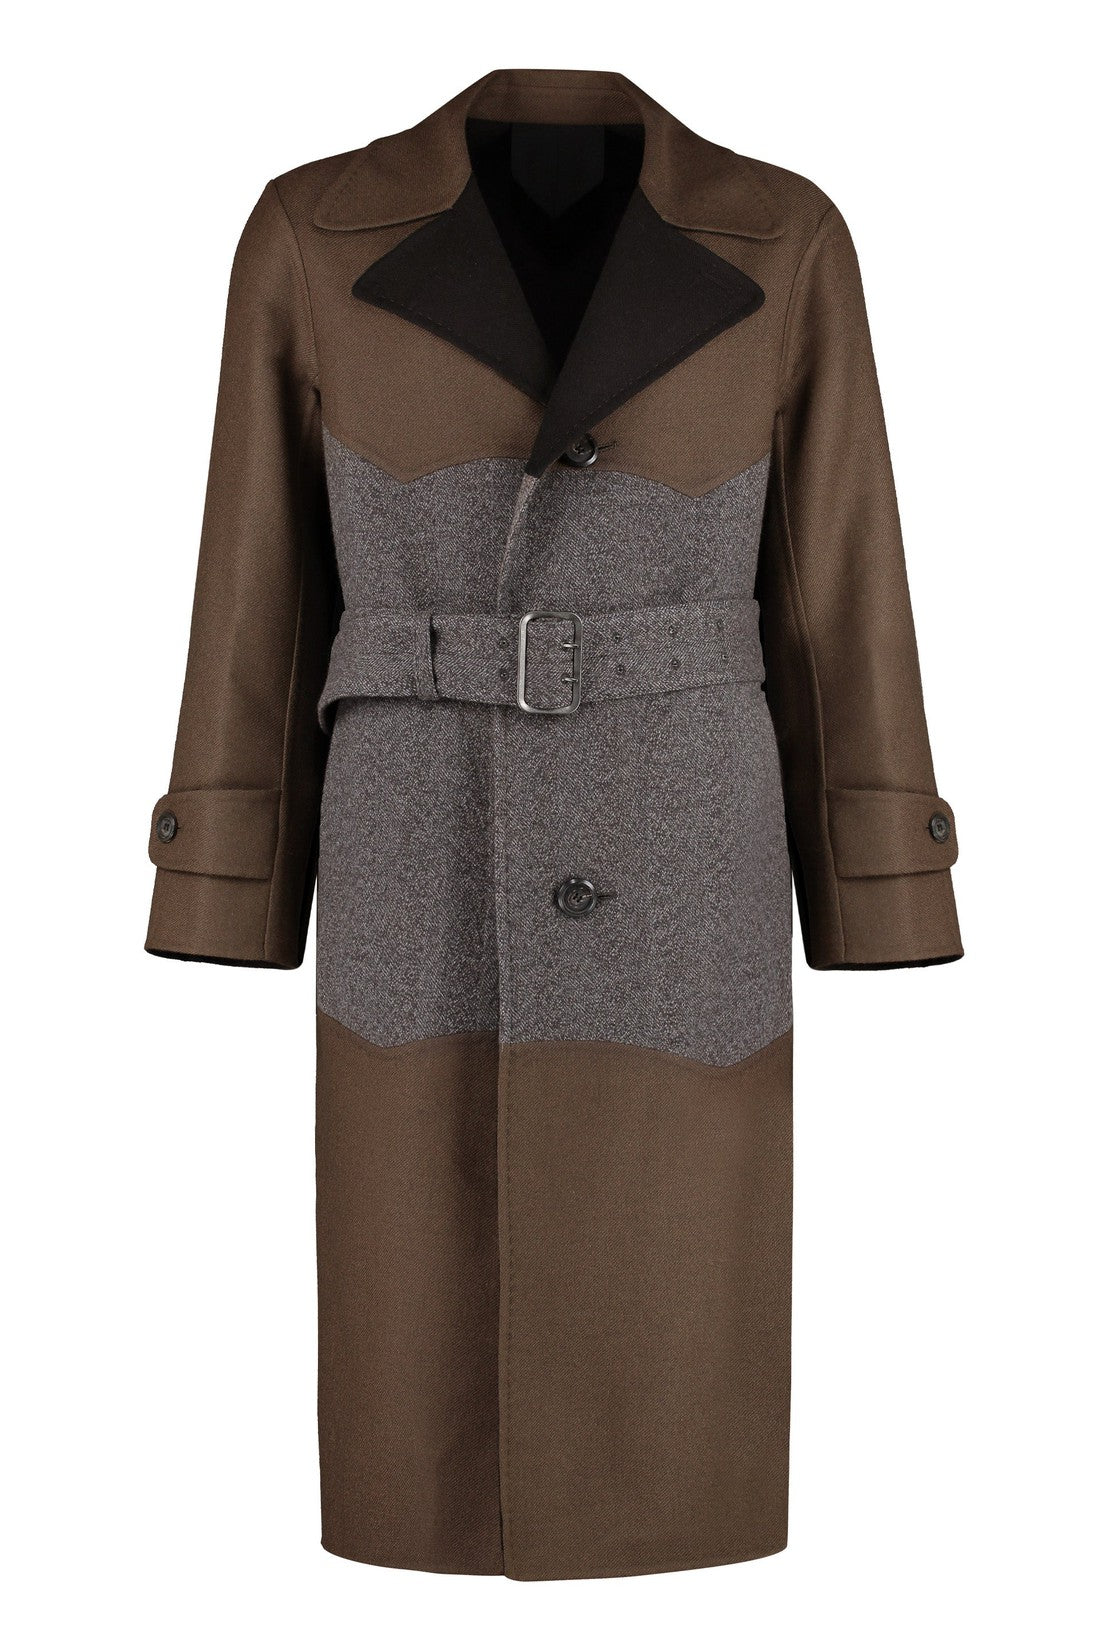 FERRAGAMO-OUTLET-SALE-Wool long coat-ARCHIVIST